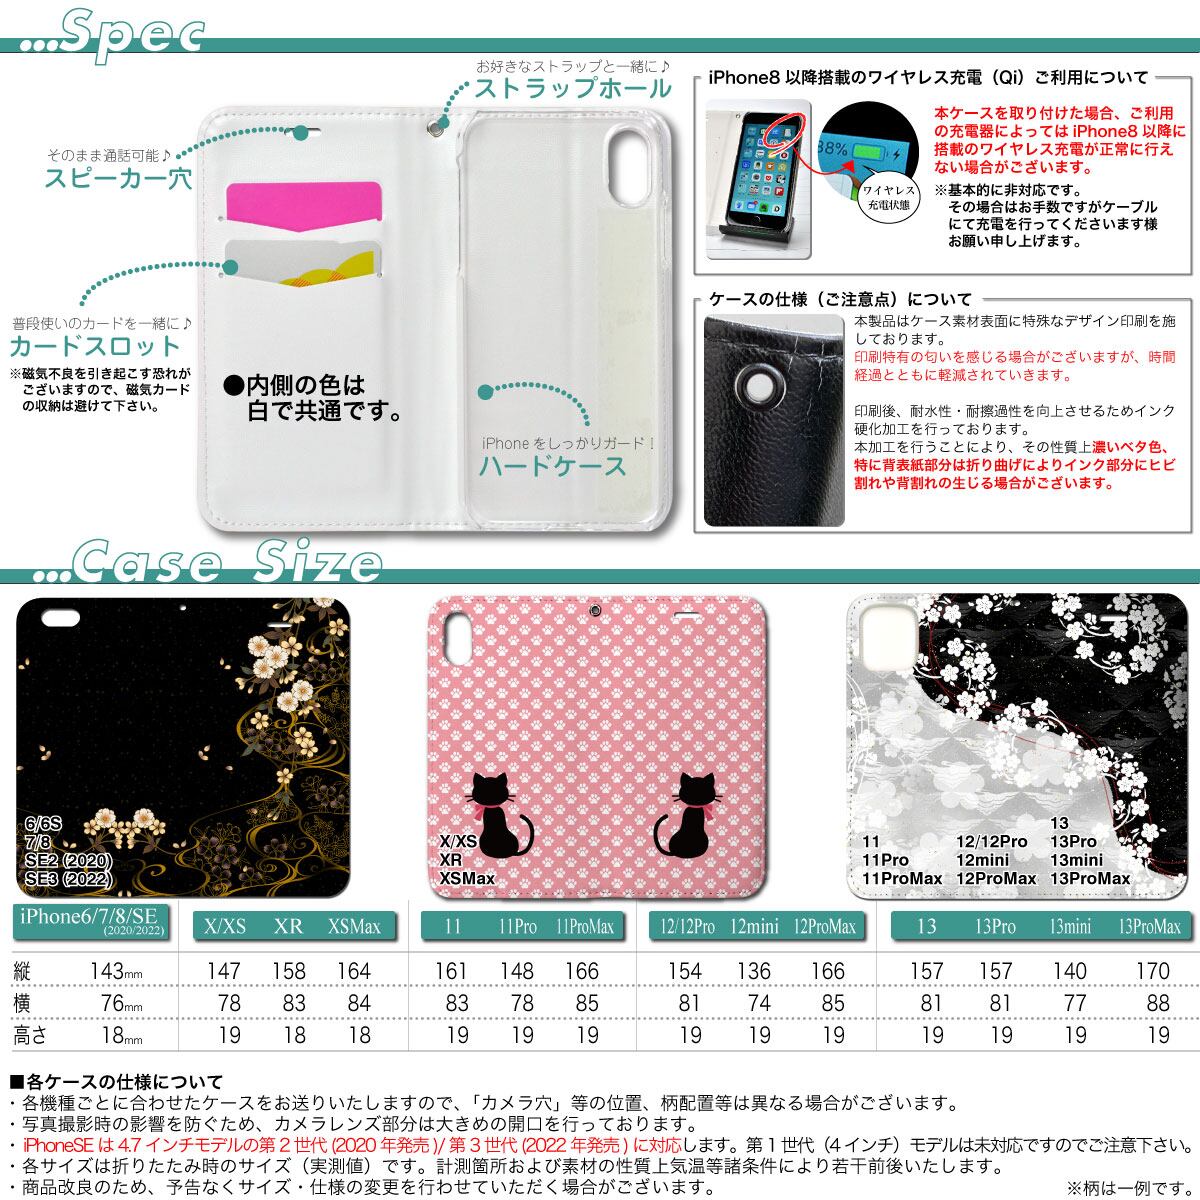 【ケイトスペード】ラビット iPhone 7/8対応